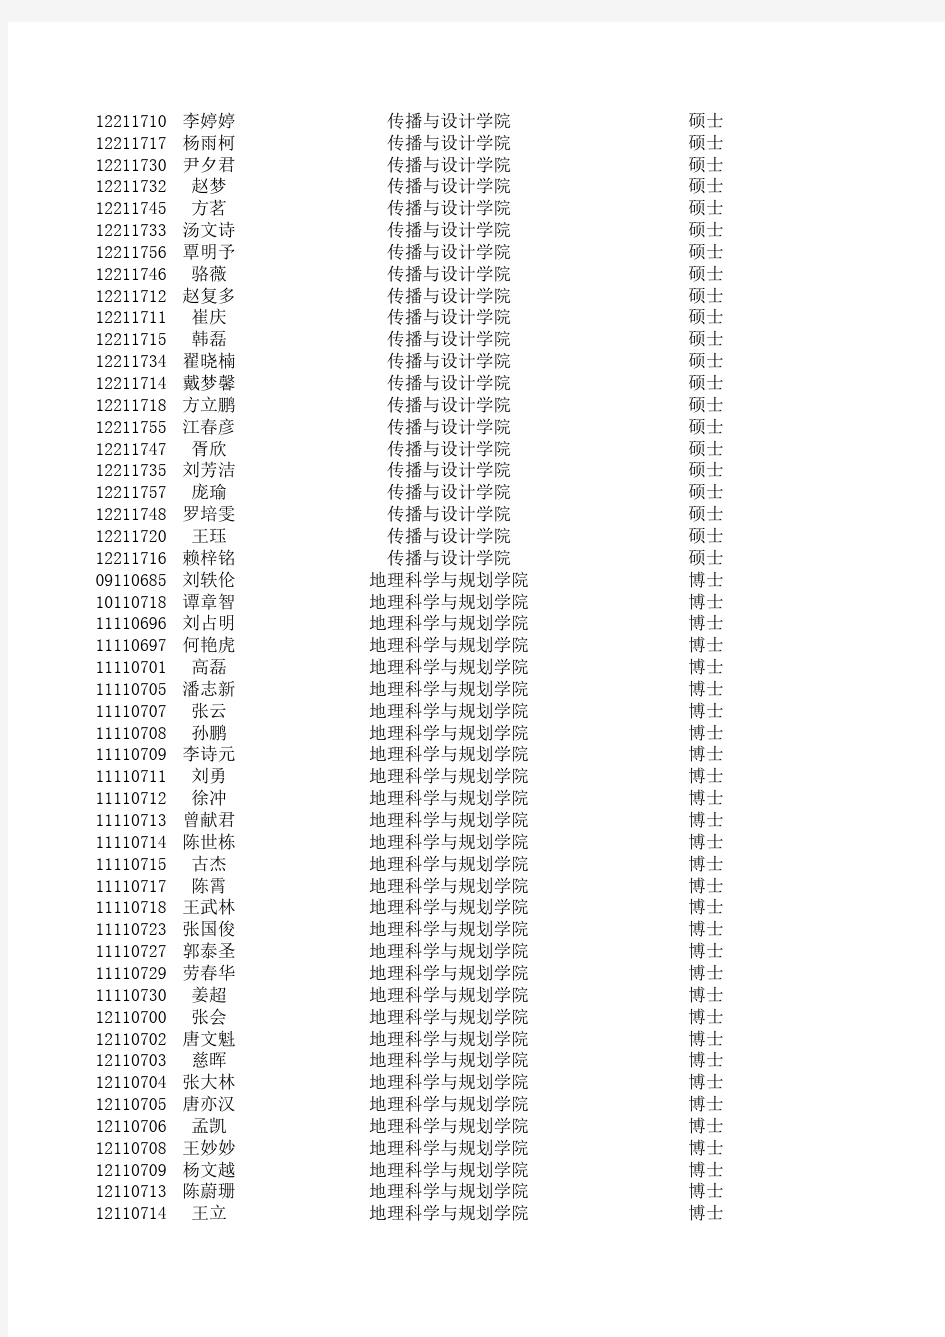 中山大学2013学年研究生奖学金资格名单